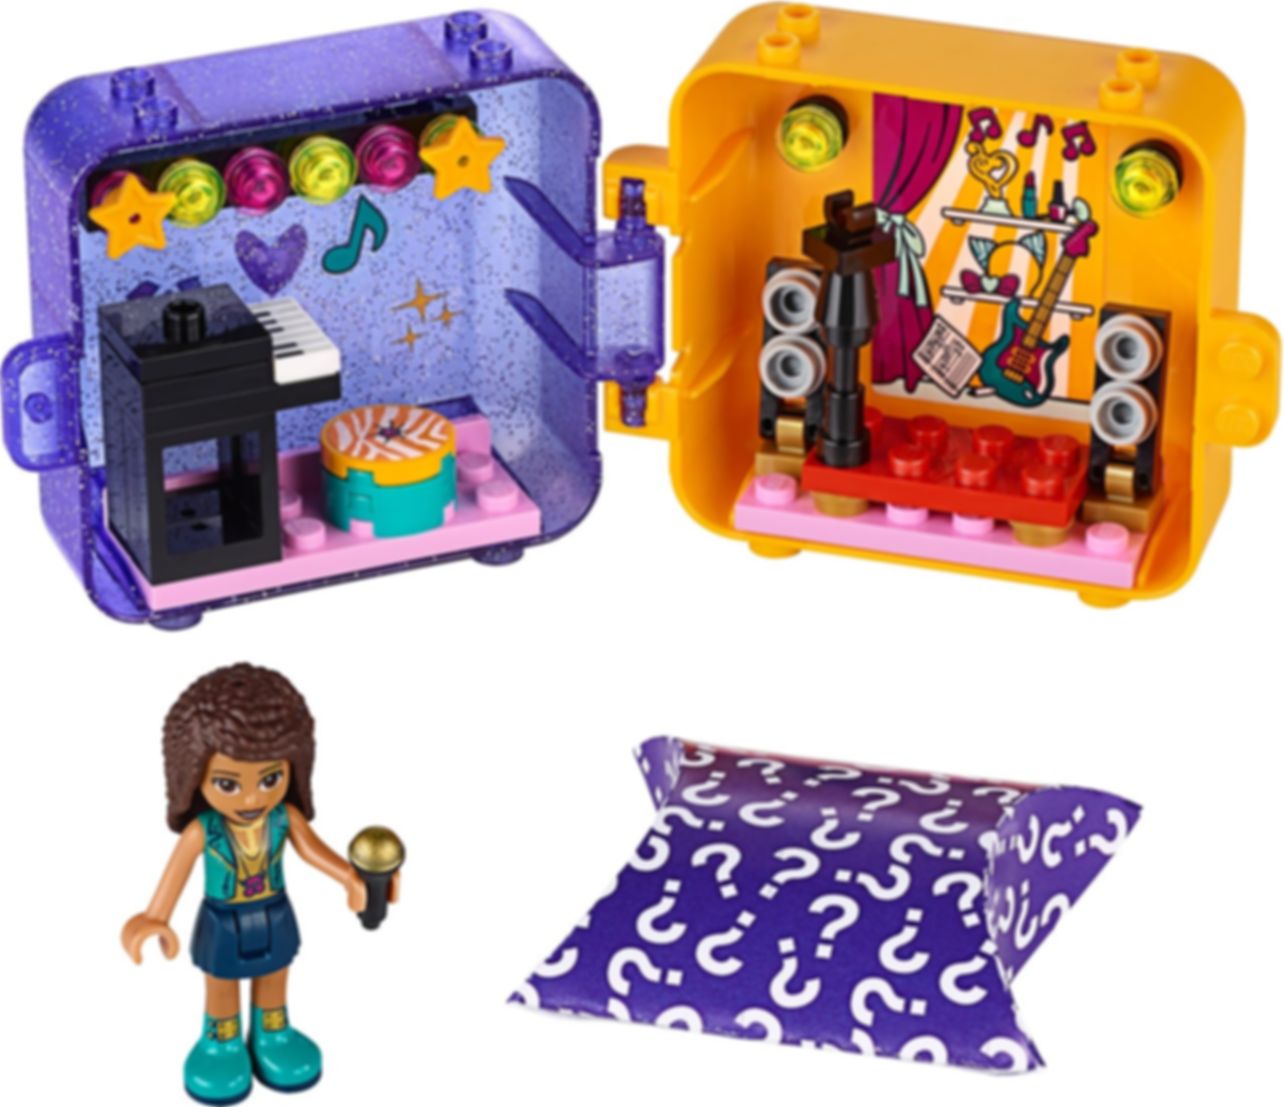 LEGO® Friends Andrea's speelkubus componenten